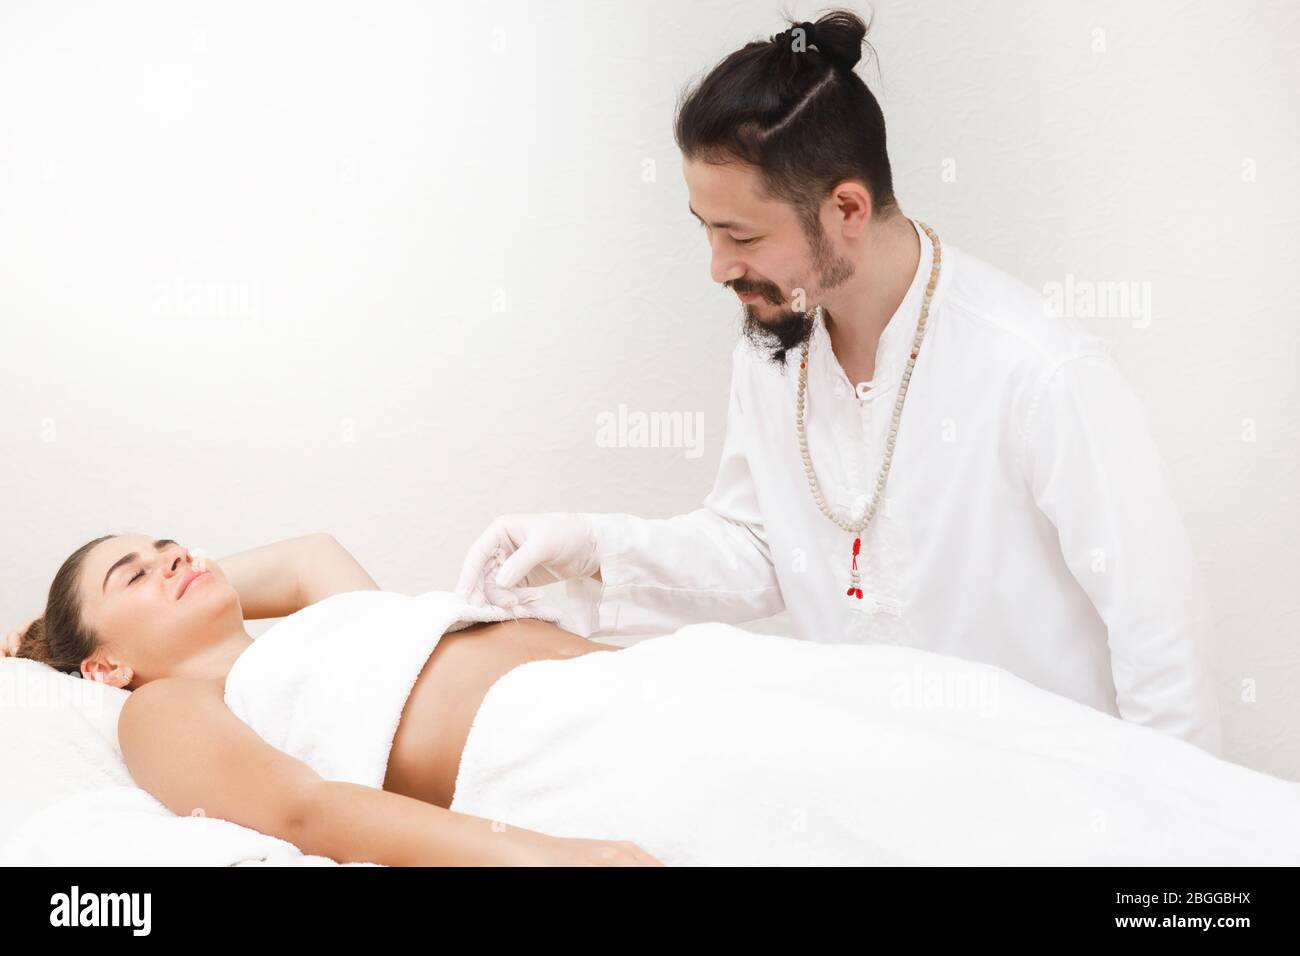 Médecin de médecine orientale faisant des estomacs d'acupuncture pour soulager la douleur d'estomac d'une femme. Médecine alternative Banque D'Images